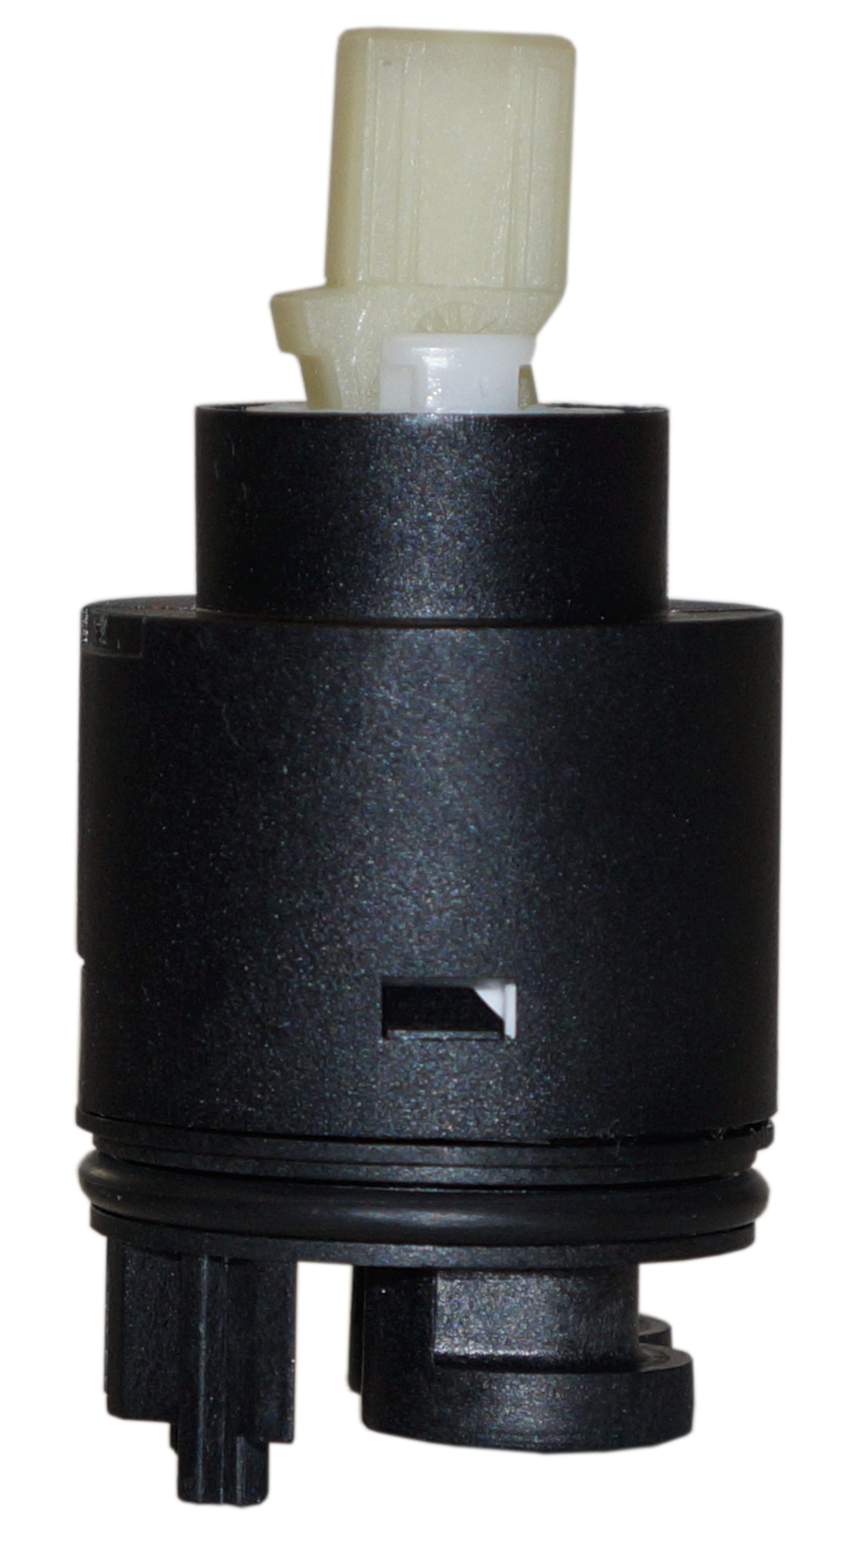  Roca cartridge for model NAIA, diameter 35 mm